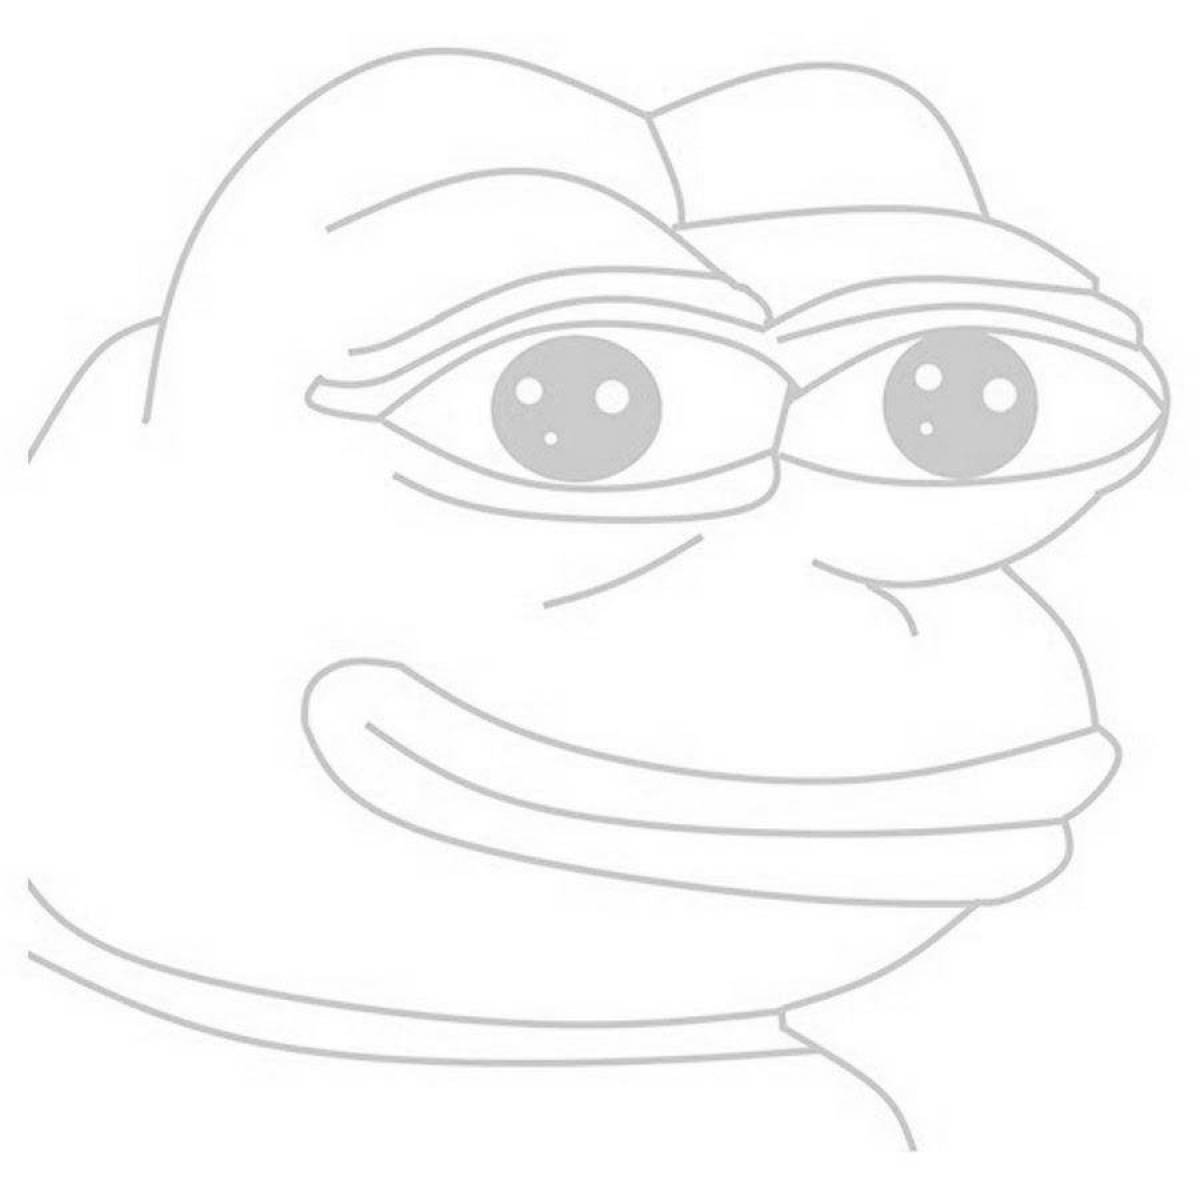 Fun coloring Pepe the frog